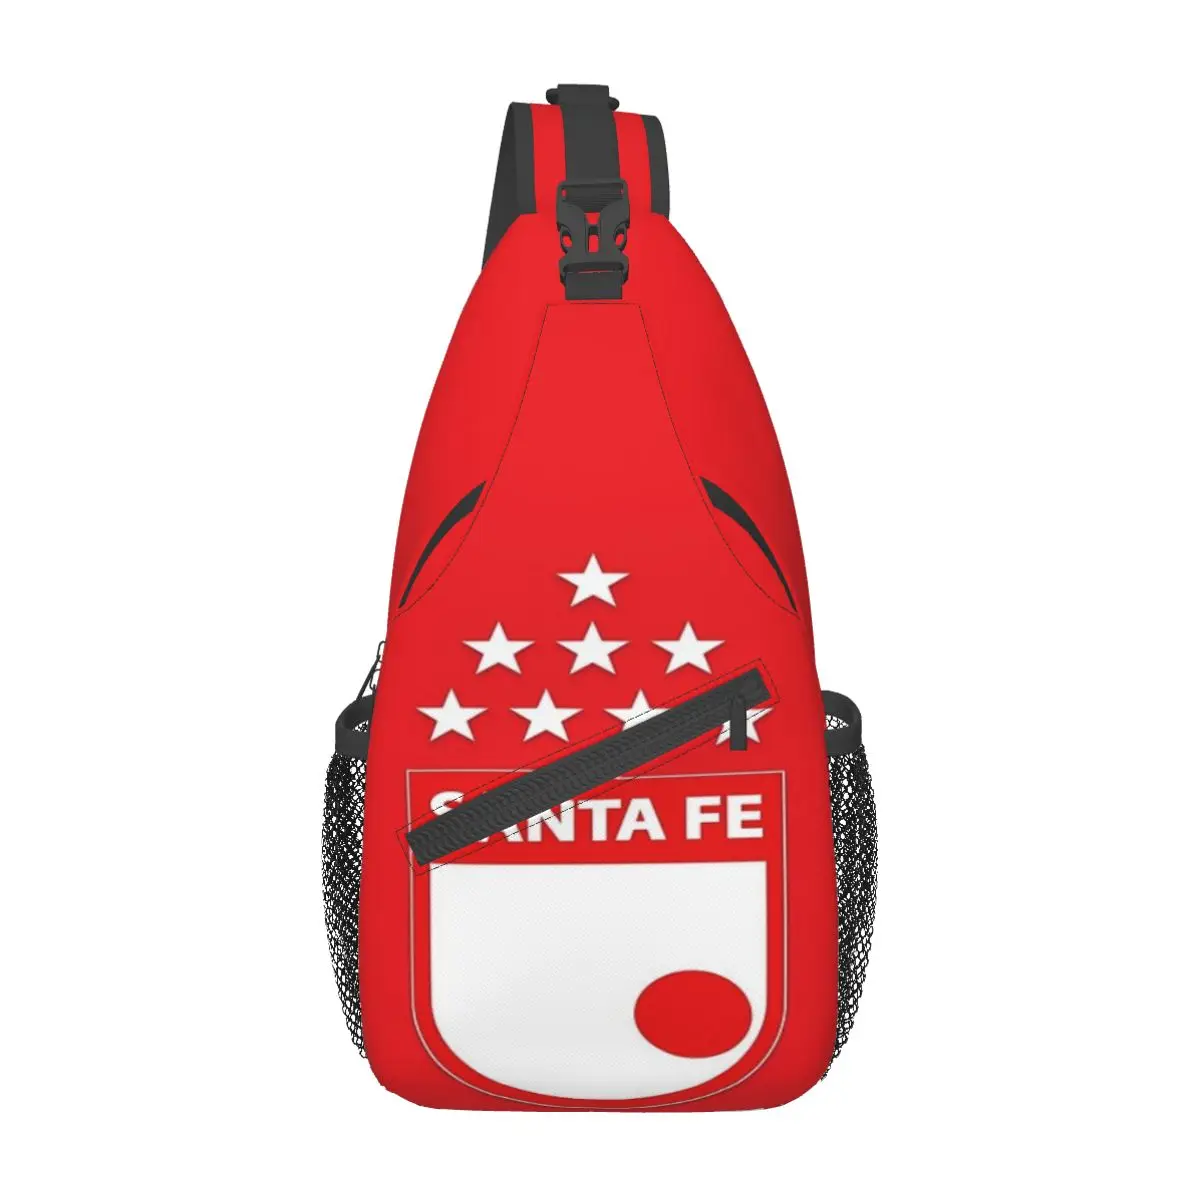 

Нагрудная сумка Santa Fe Campen De La Copa suramerica, повседневная Сумочка через плечо из полиэстера в стиле ретро, в разных стилях по диагонали